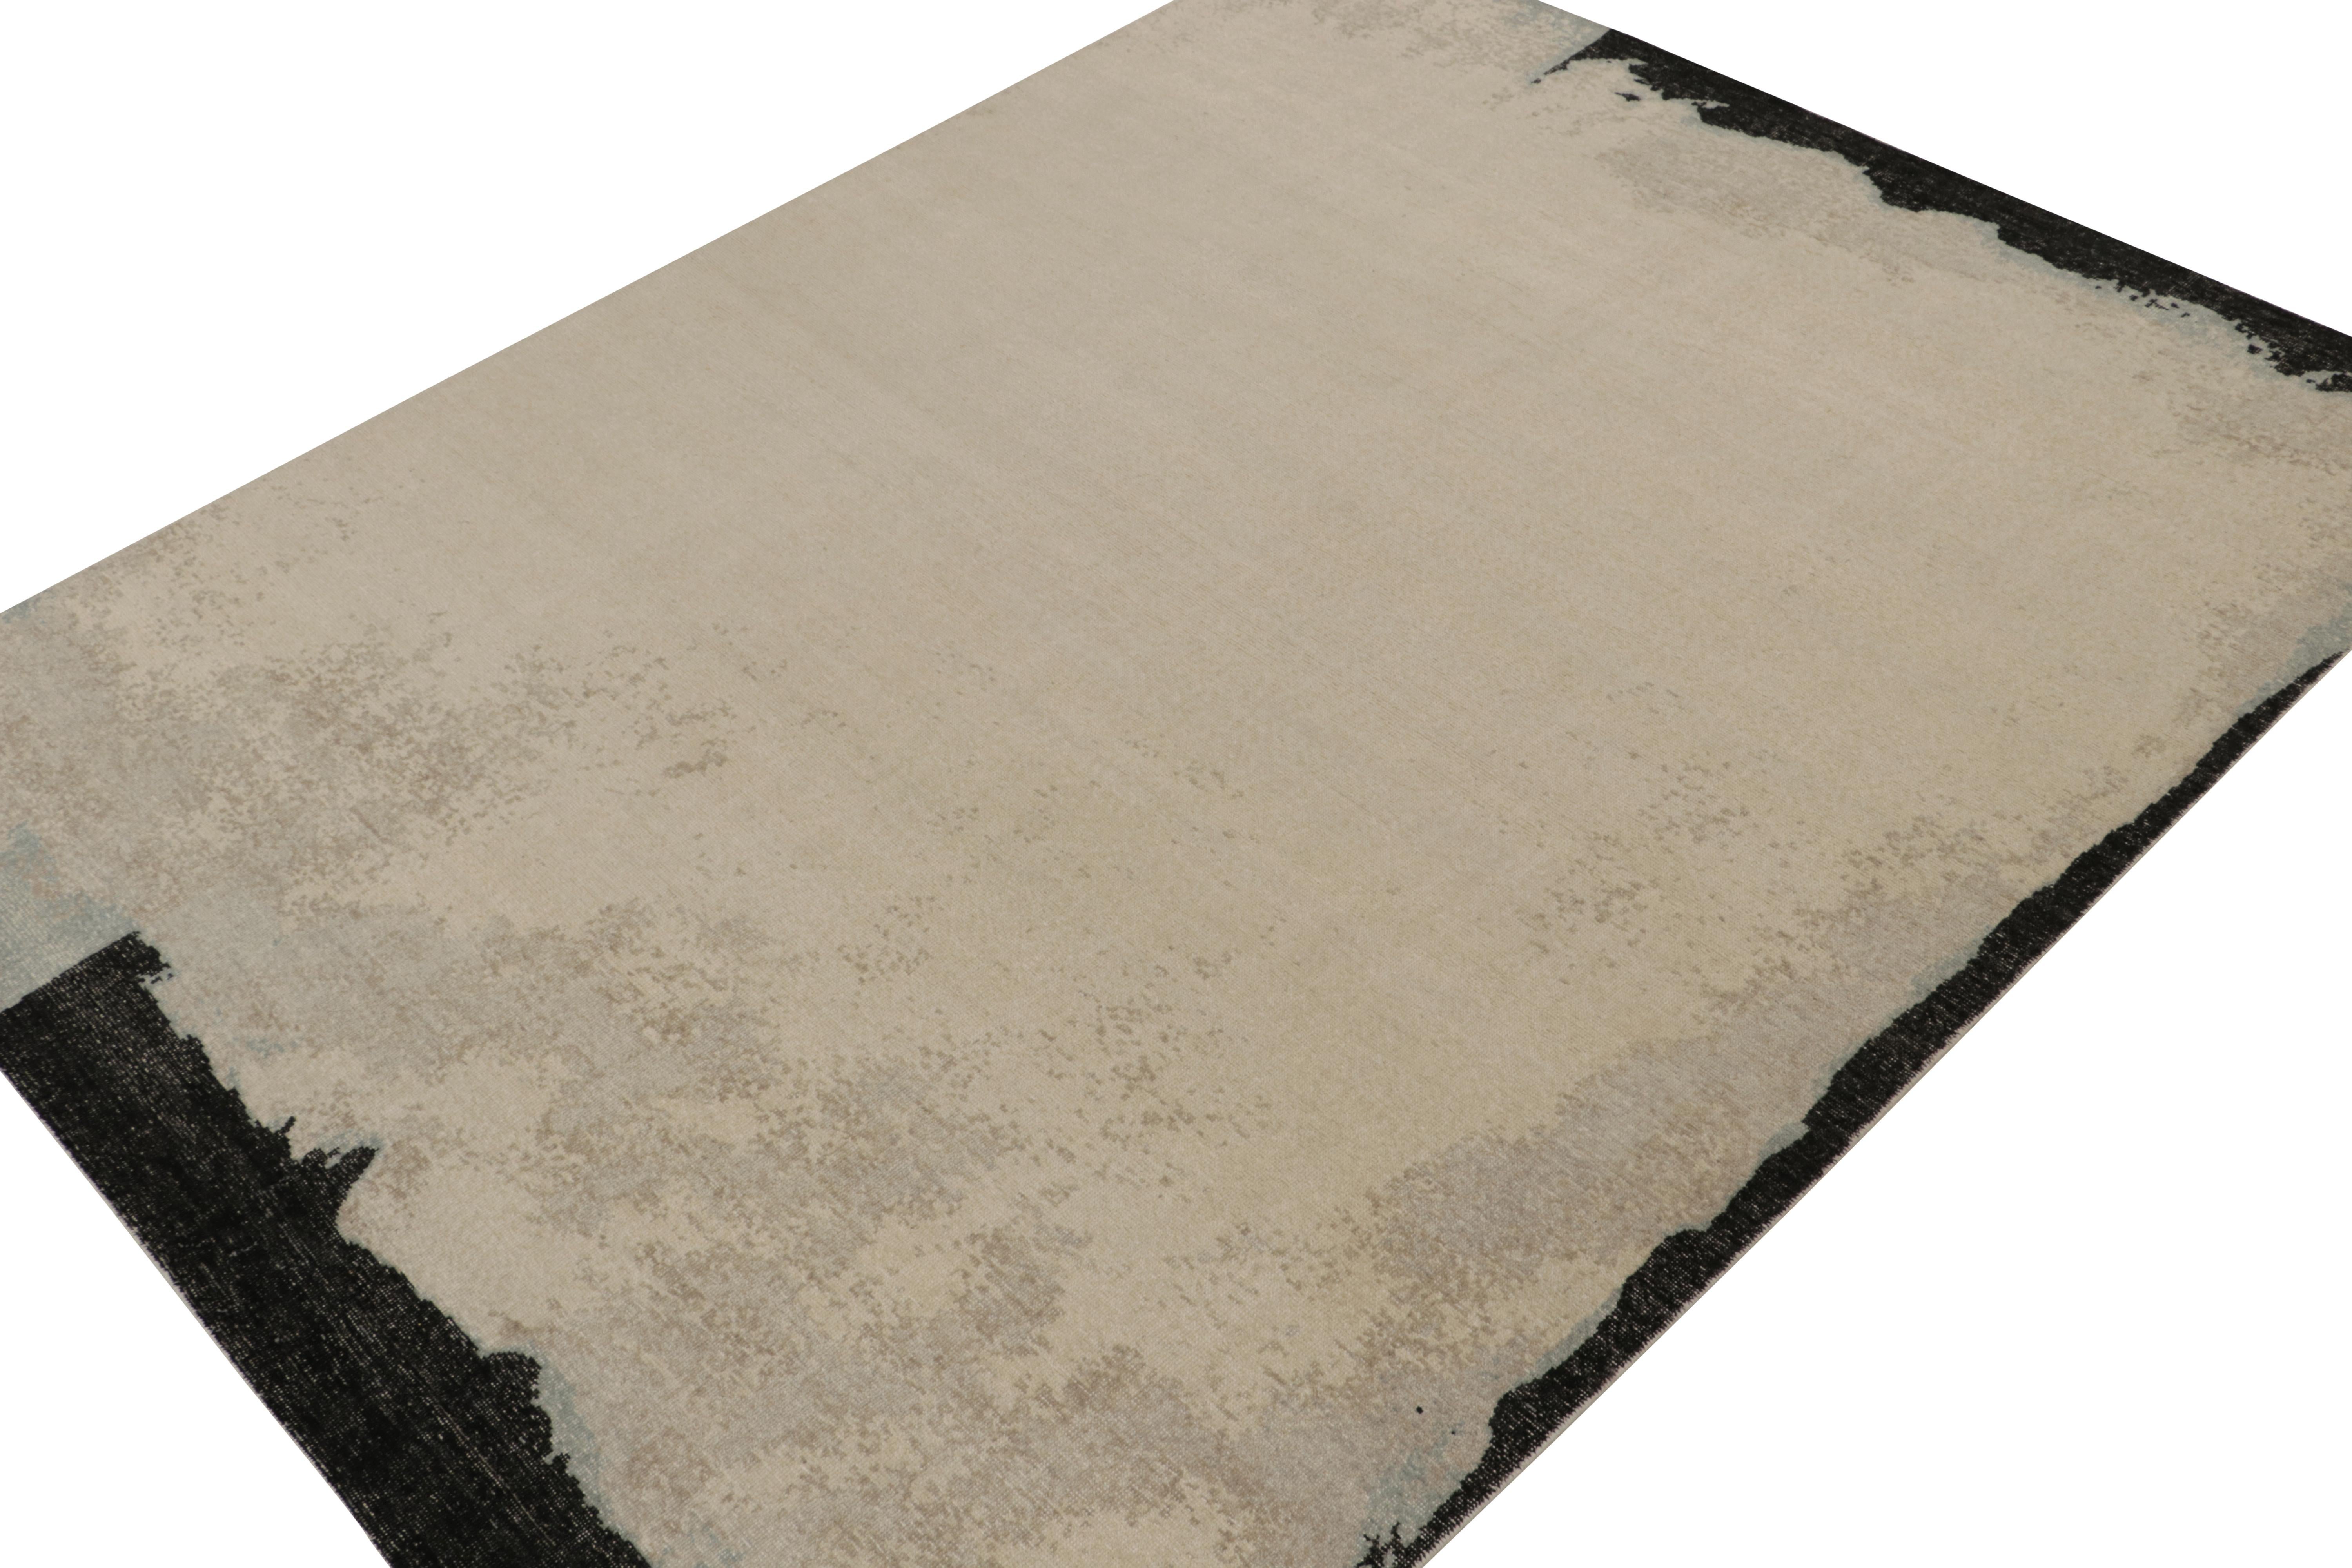 Ce tapis abstrait contemporain 9x12 est un nouvel ajout à la Collection Homage de Rug & Kilim. Noué à la main en laine et en coton.

Plus loin dans le Design :

Ce design utilise un contraste de couleurs audacieuses et subtiles dans ses notes de jeu